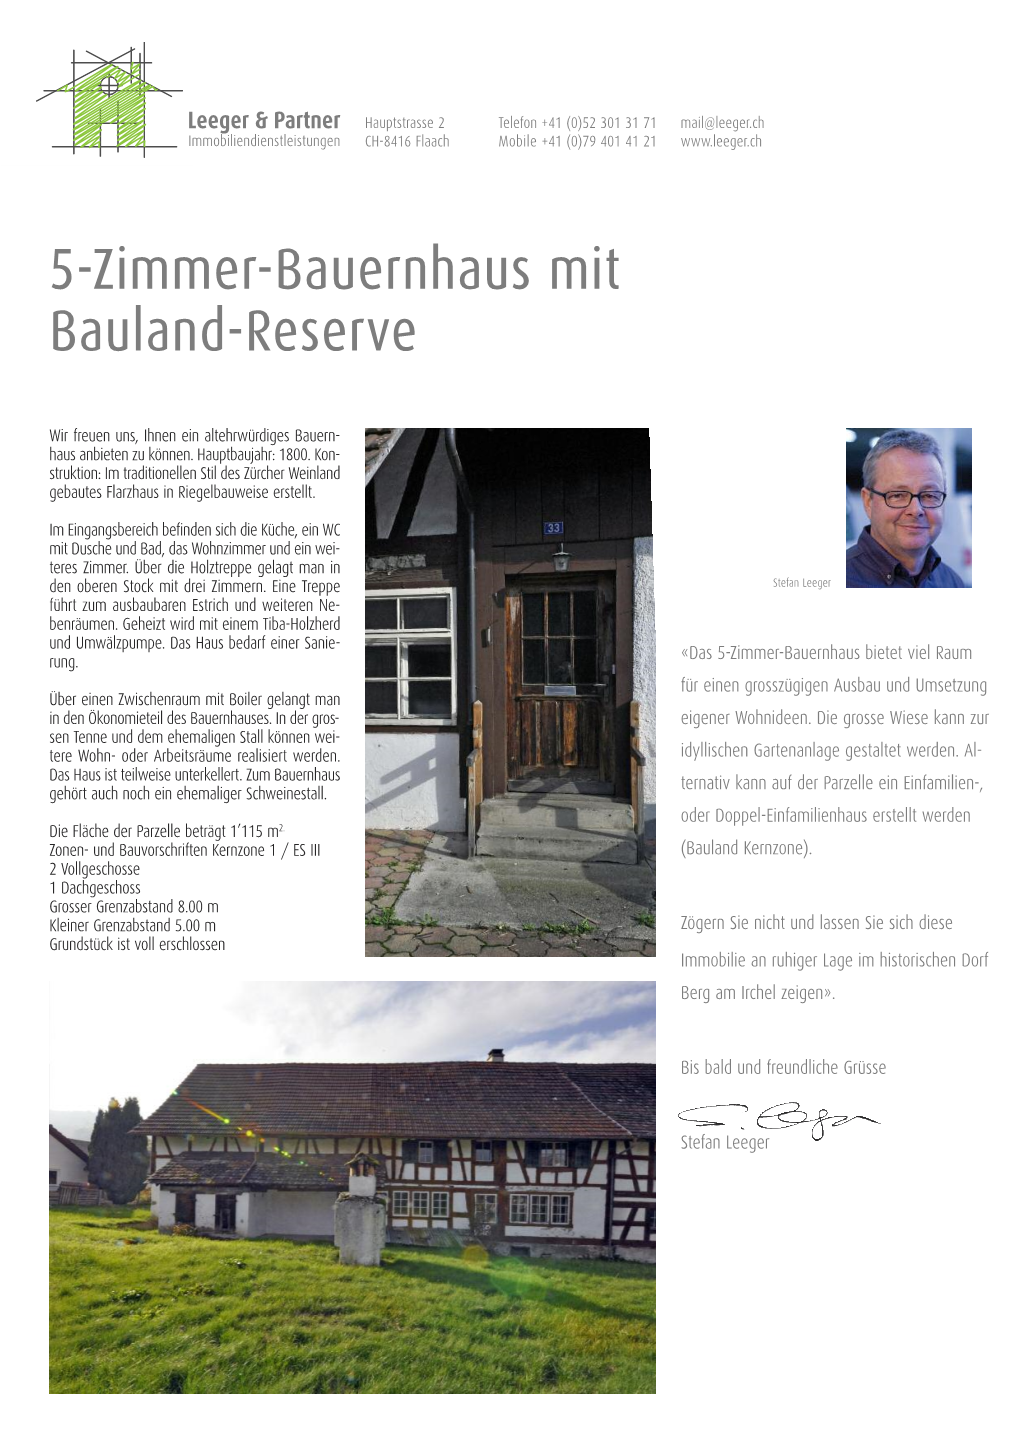 5-Zimmer-Bauernhaus Mit Bauland-Reserve